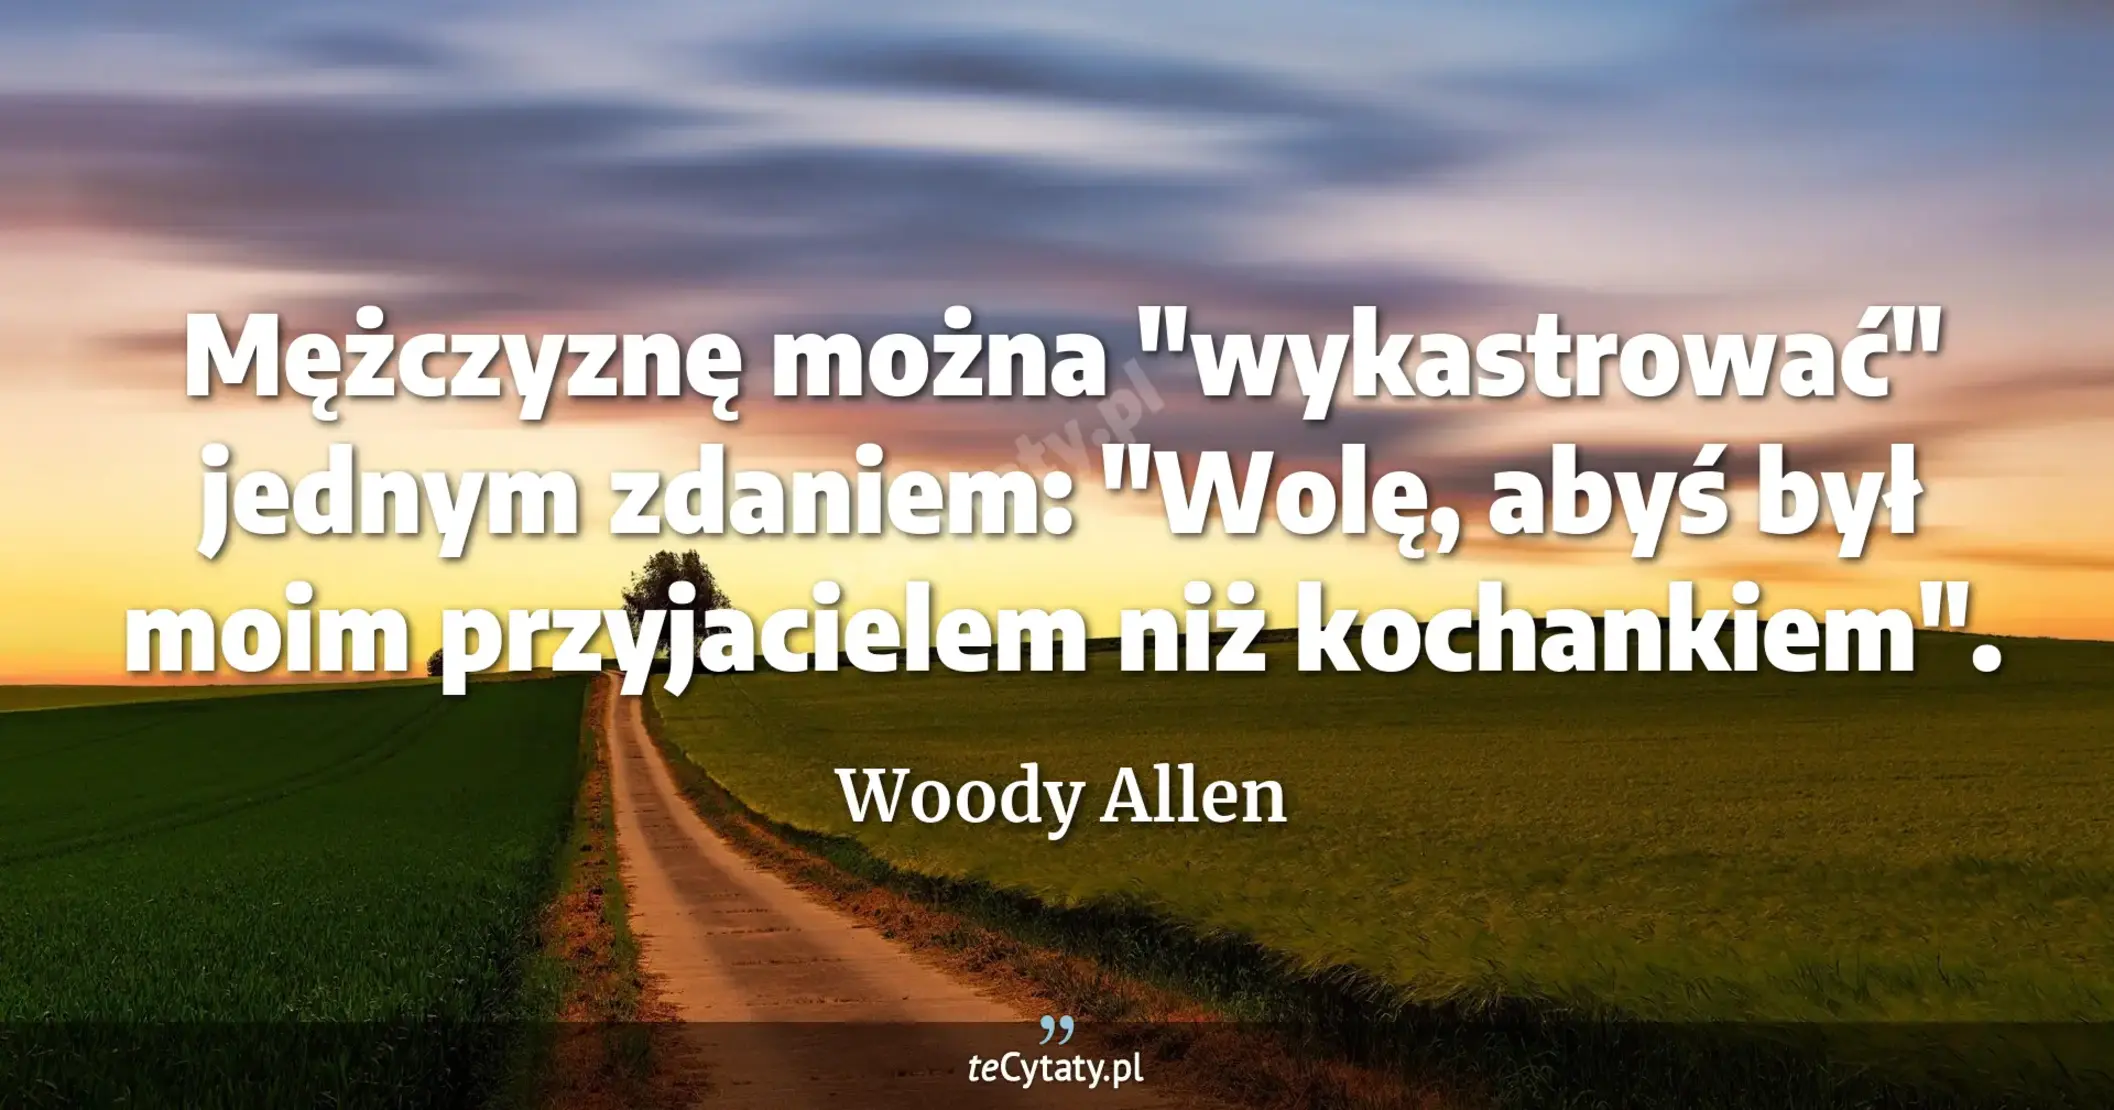 Mężczyznę można "wykastrować" jednym zdaniem: "Wolę, abyś był moim przyjacielem niż kochankiem". - Woody Allen